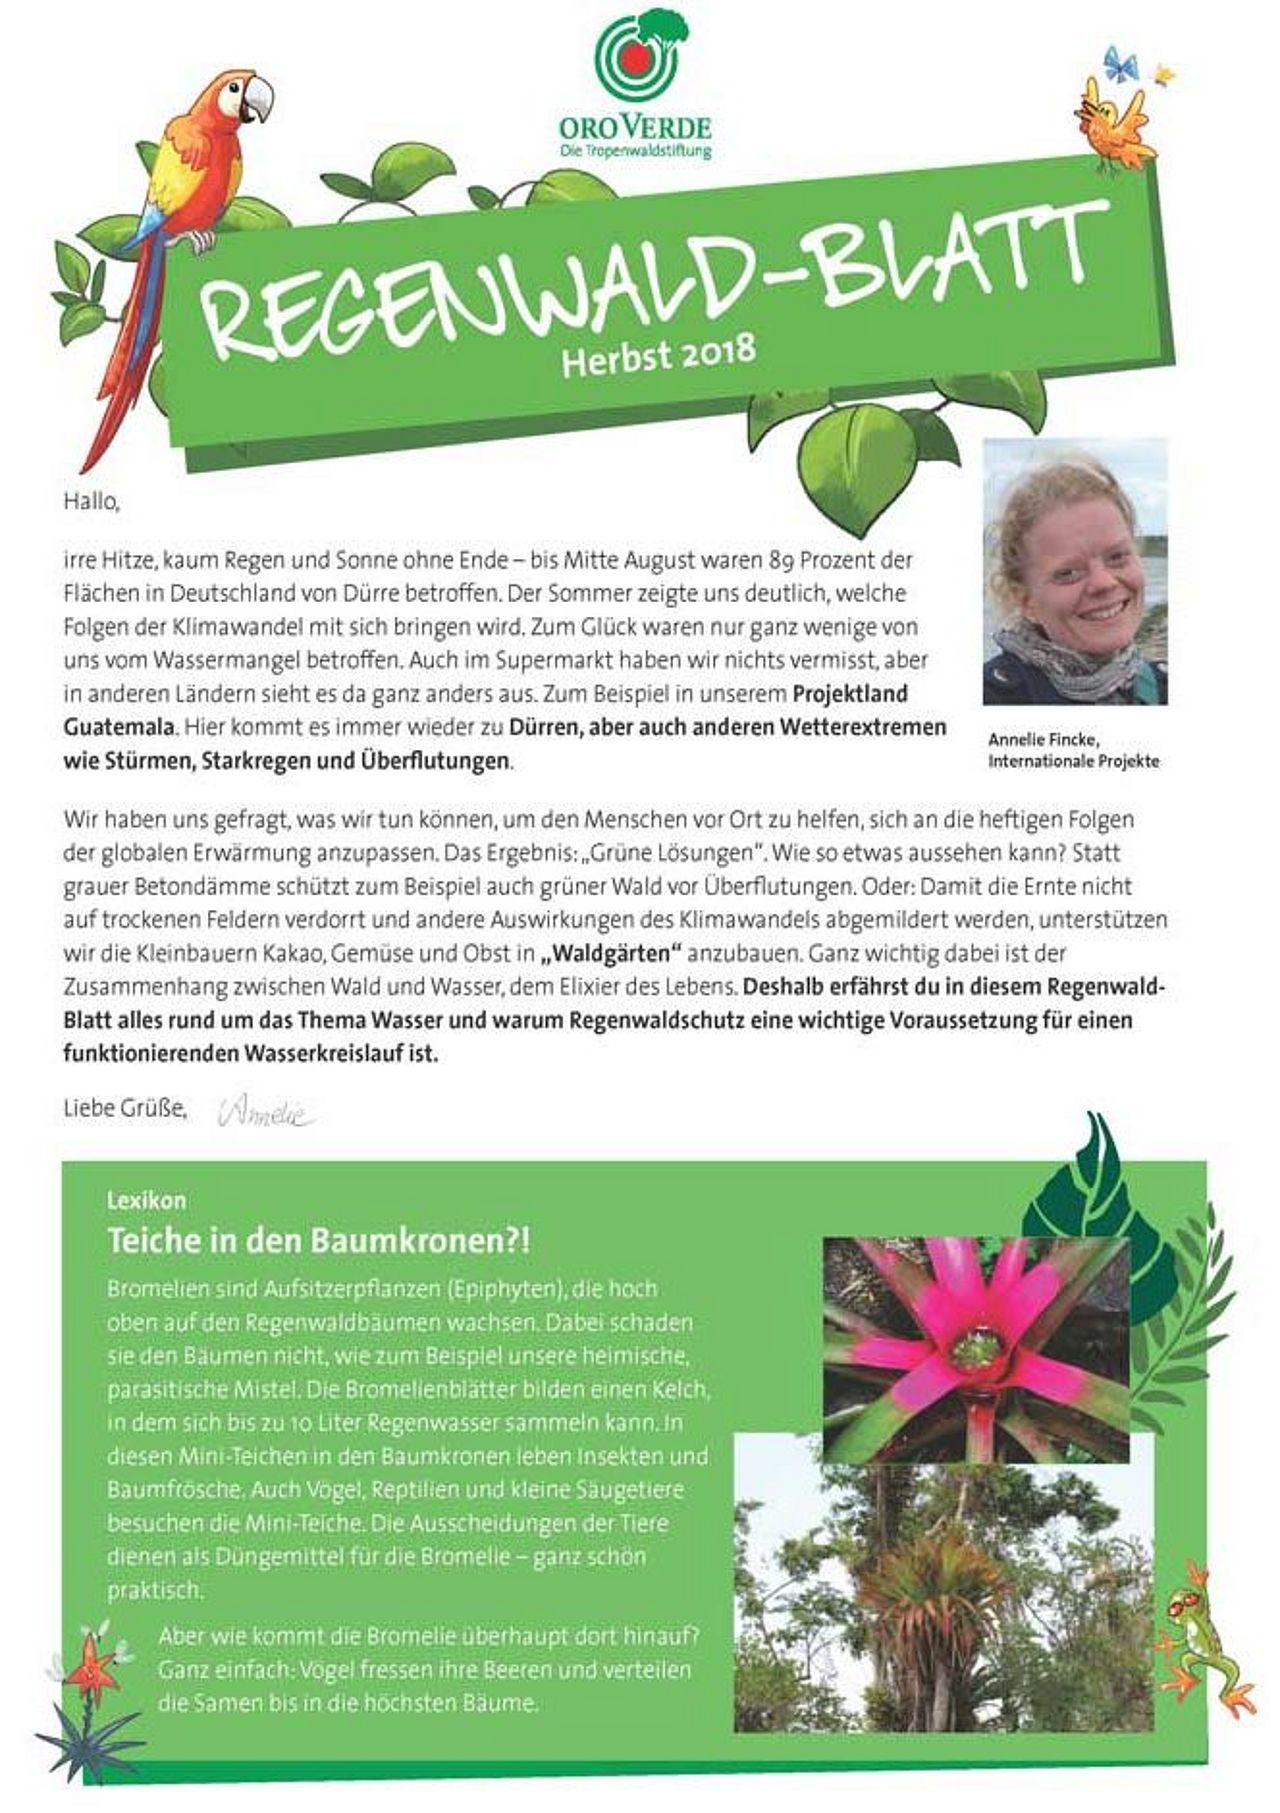 Regenwaldblatt Herbst 2018 von OroVerde zum Thema Klimawandel.